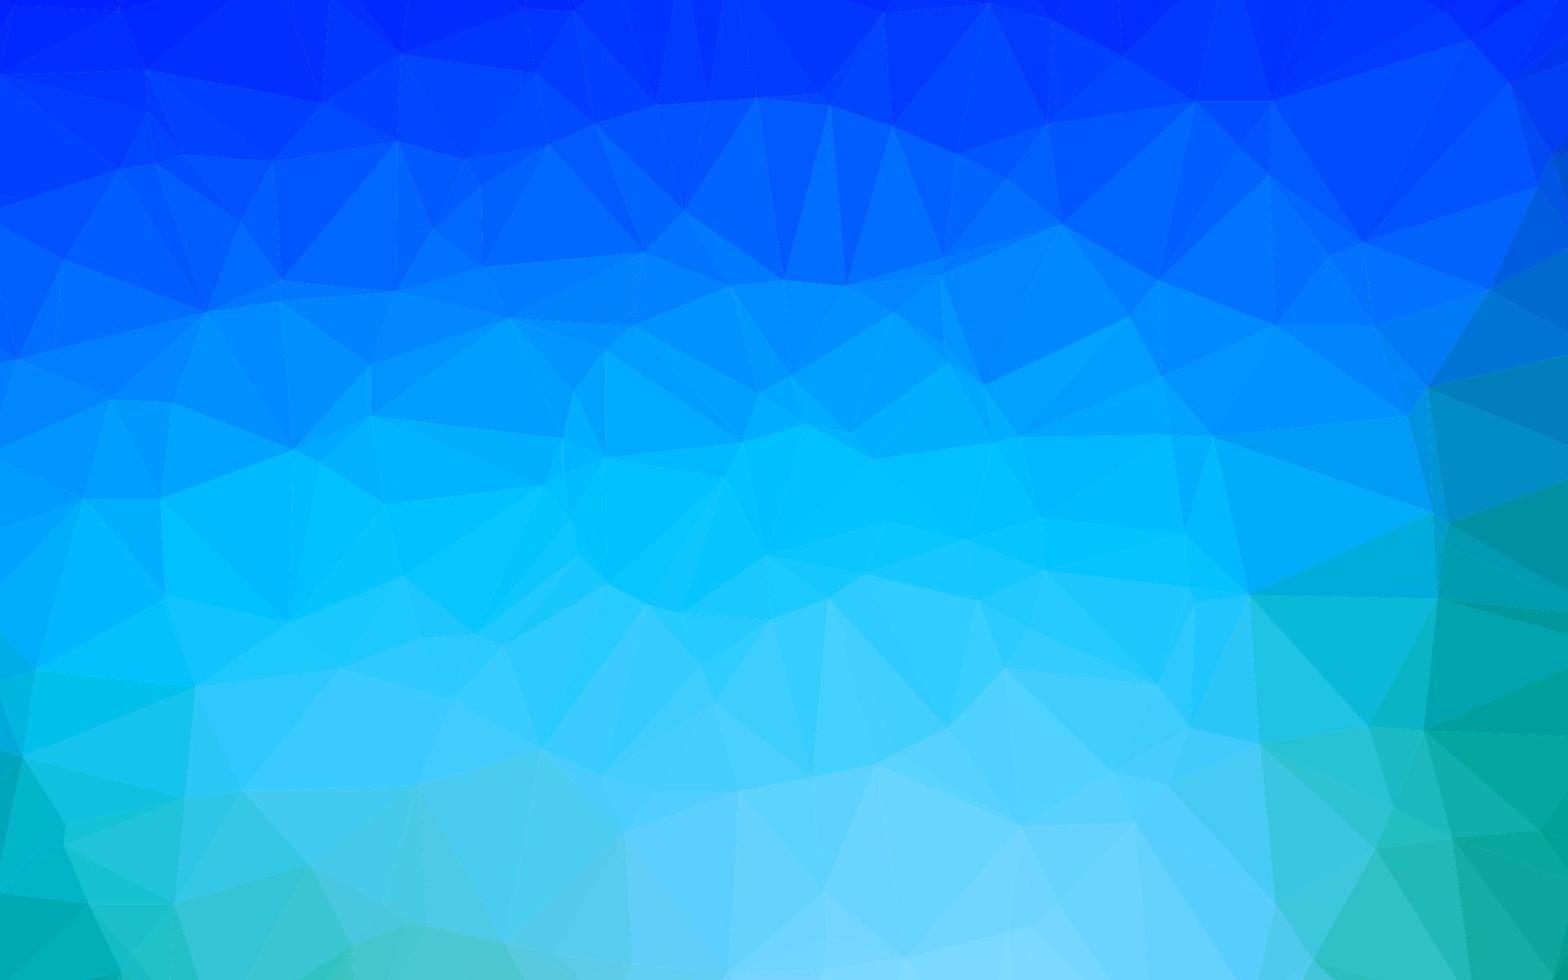 fundo abstrato do polígono do vetor azul claro.